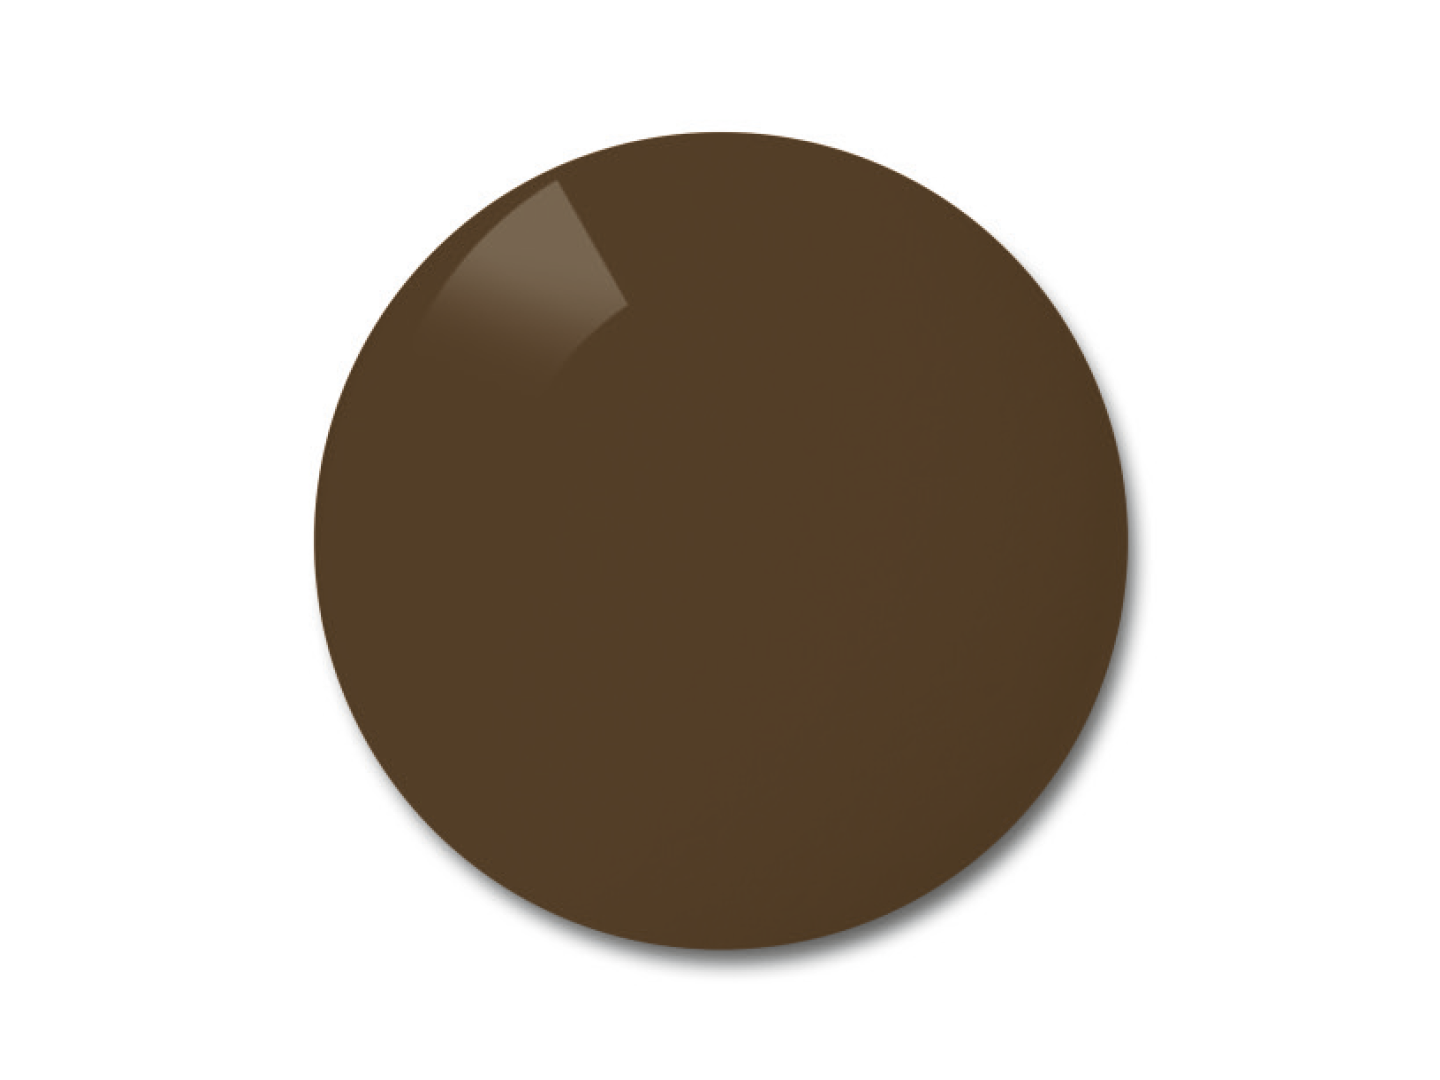 Приклад кольору для коричневих поляризованих лінз. 